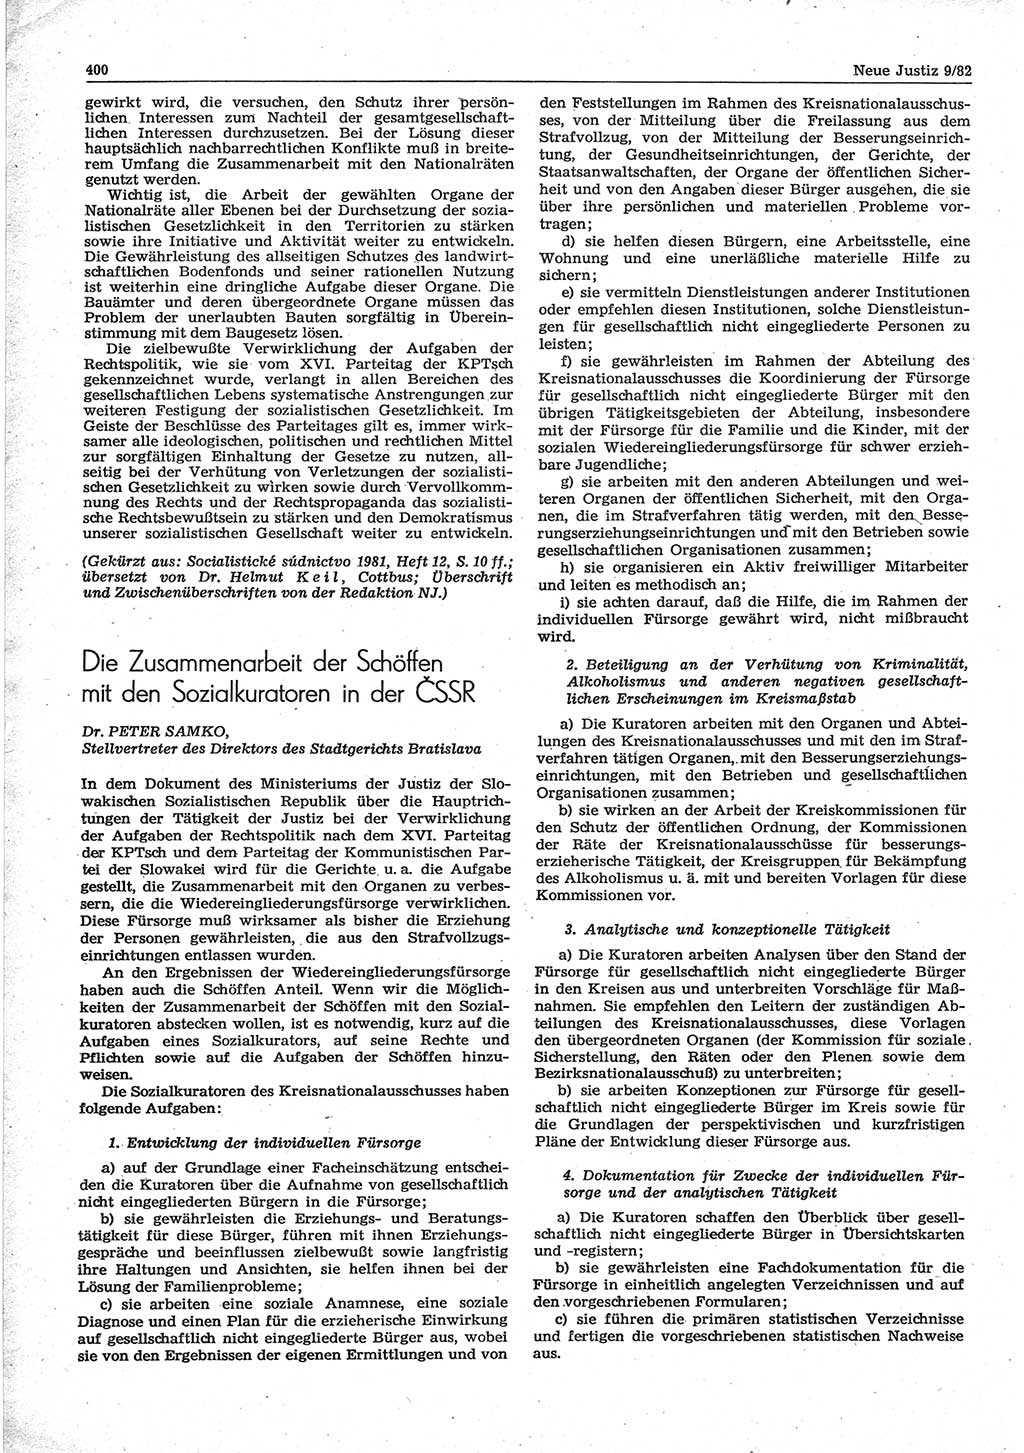 Neue Justiz (NJ), Zeitschrift für sozialistisches Recht und Gesetzlichkeit [Deutsche Demokratische Republik (DDR)], 36. Jahrgang 1982, Seite 400 (NJ DDR 1982, S. 400)